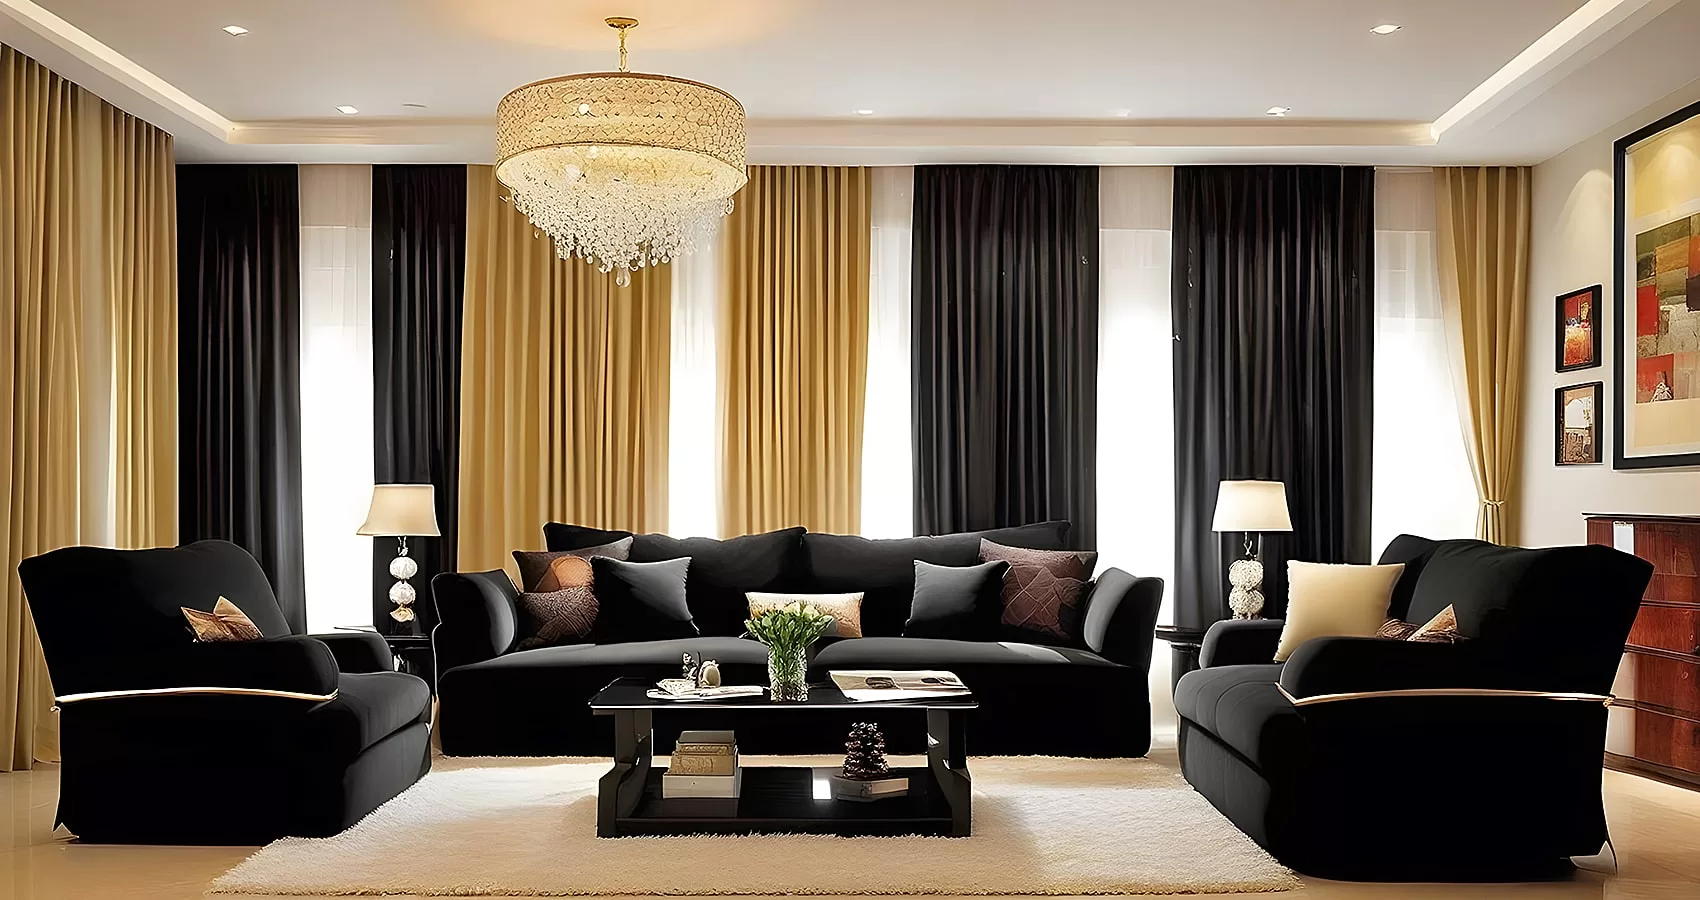 Black Couch Living Room | Black Couch Living Room Ideas | Black Sofa Living Room Ideas